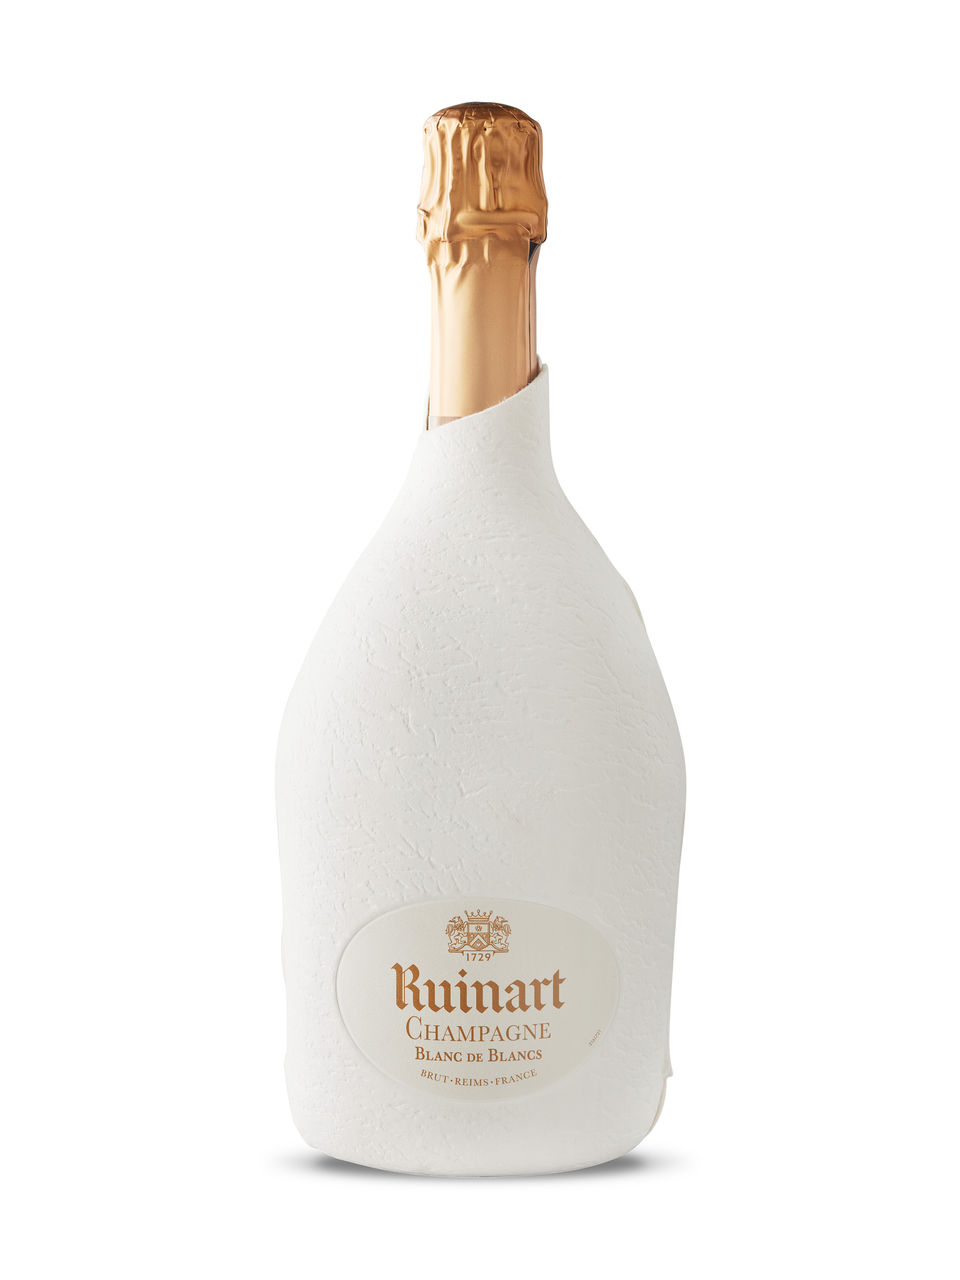 CHAMPAGNE RUINART - Achat de champagne rosé, blanc ou brut au meilleur prix